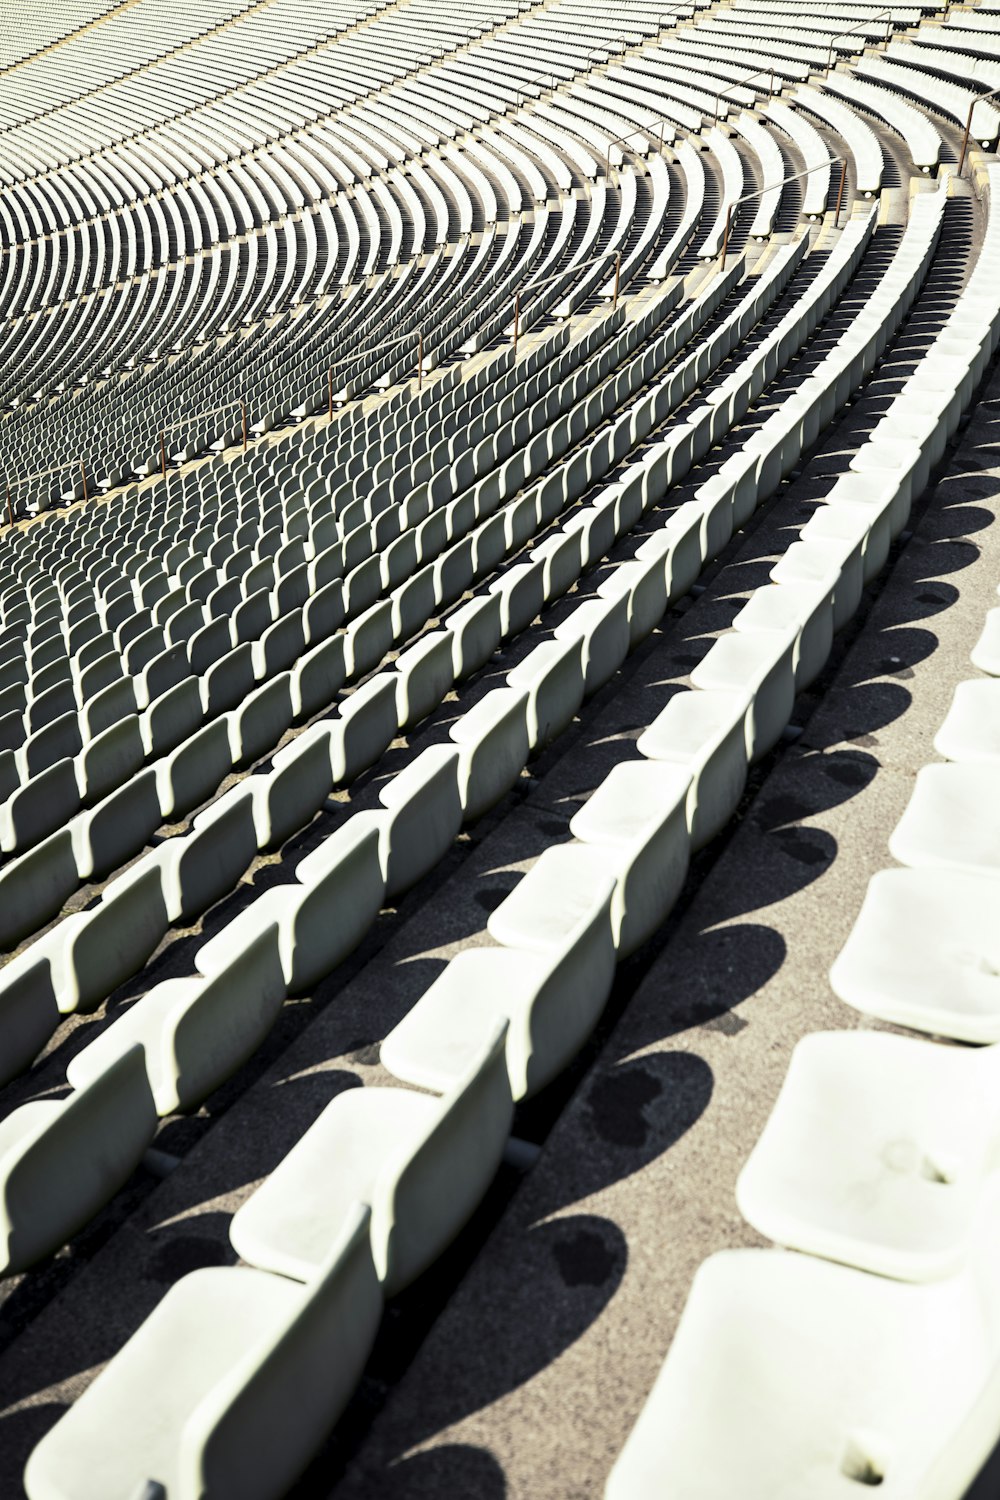 fileiras de assentos brancos em um estádio ou arena